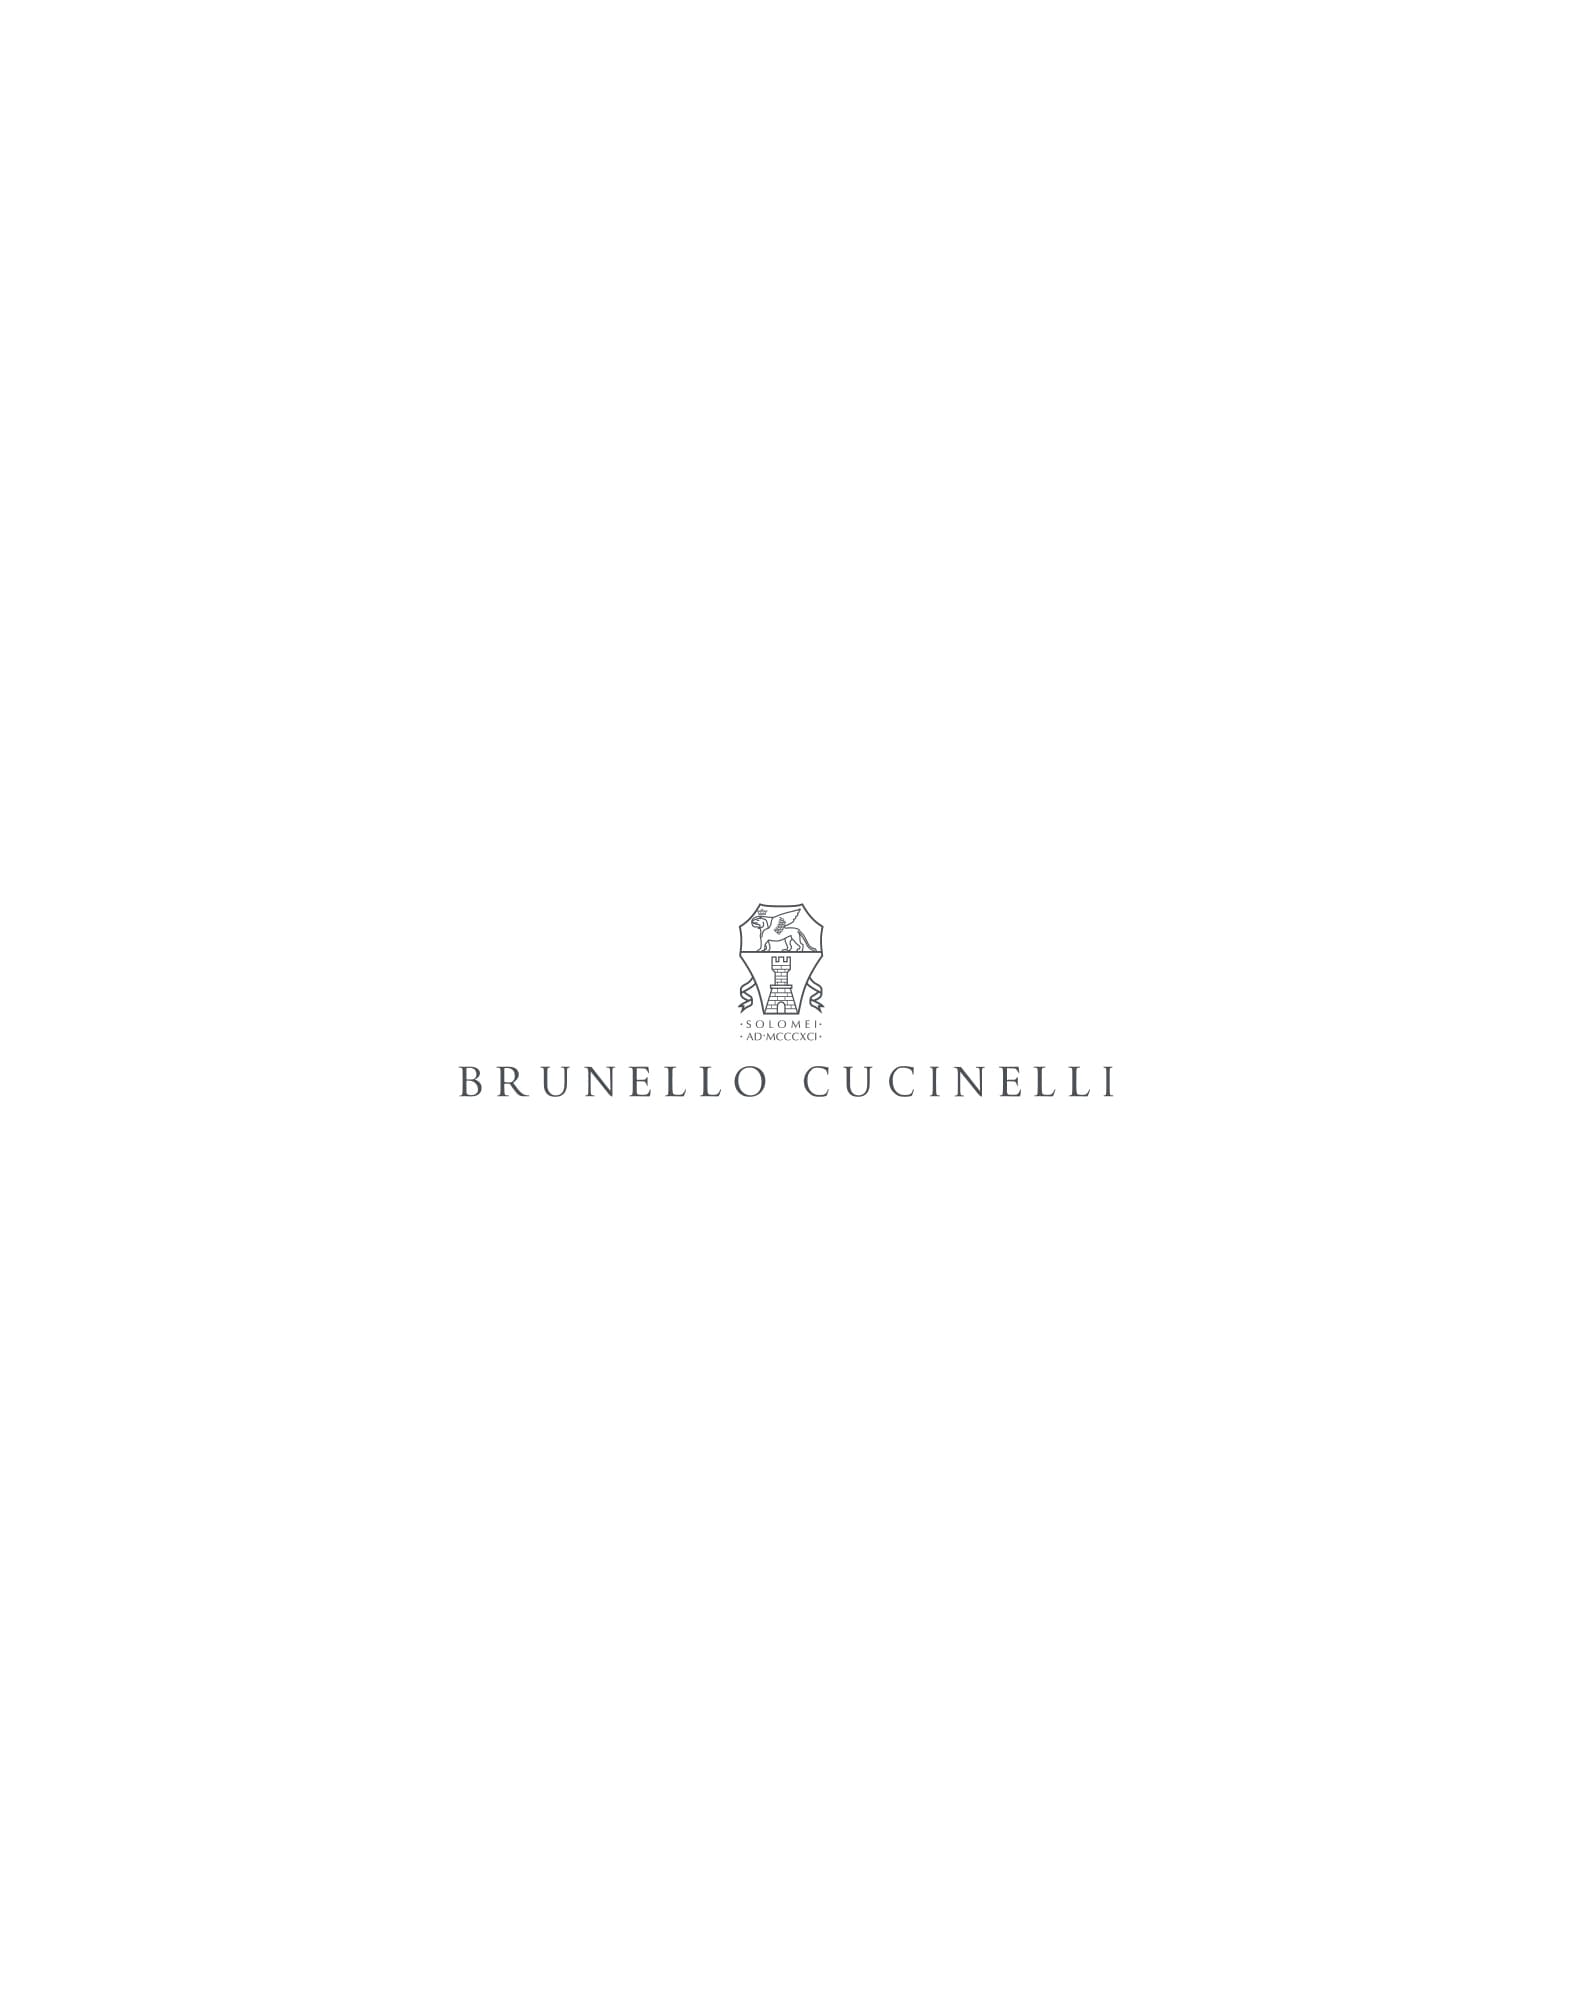 Shirt dress Blue Woman -
                        Brunello Cucinelli 